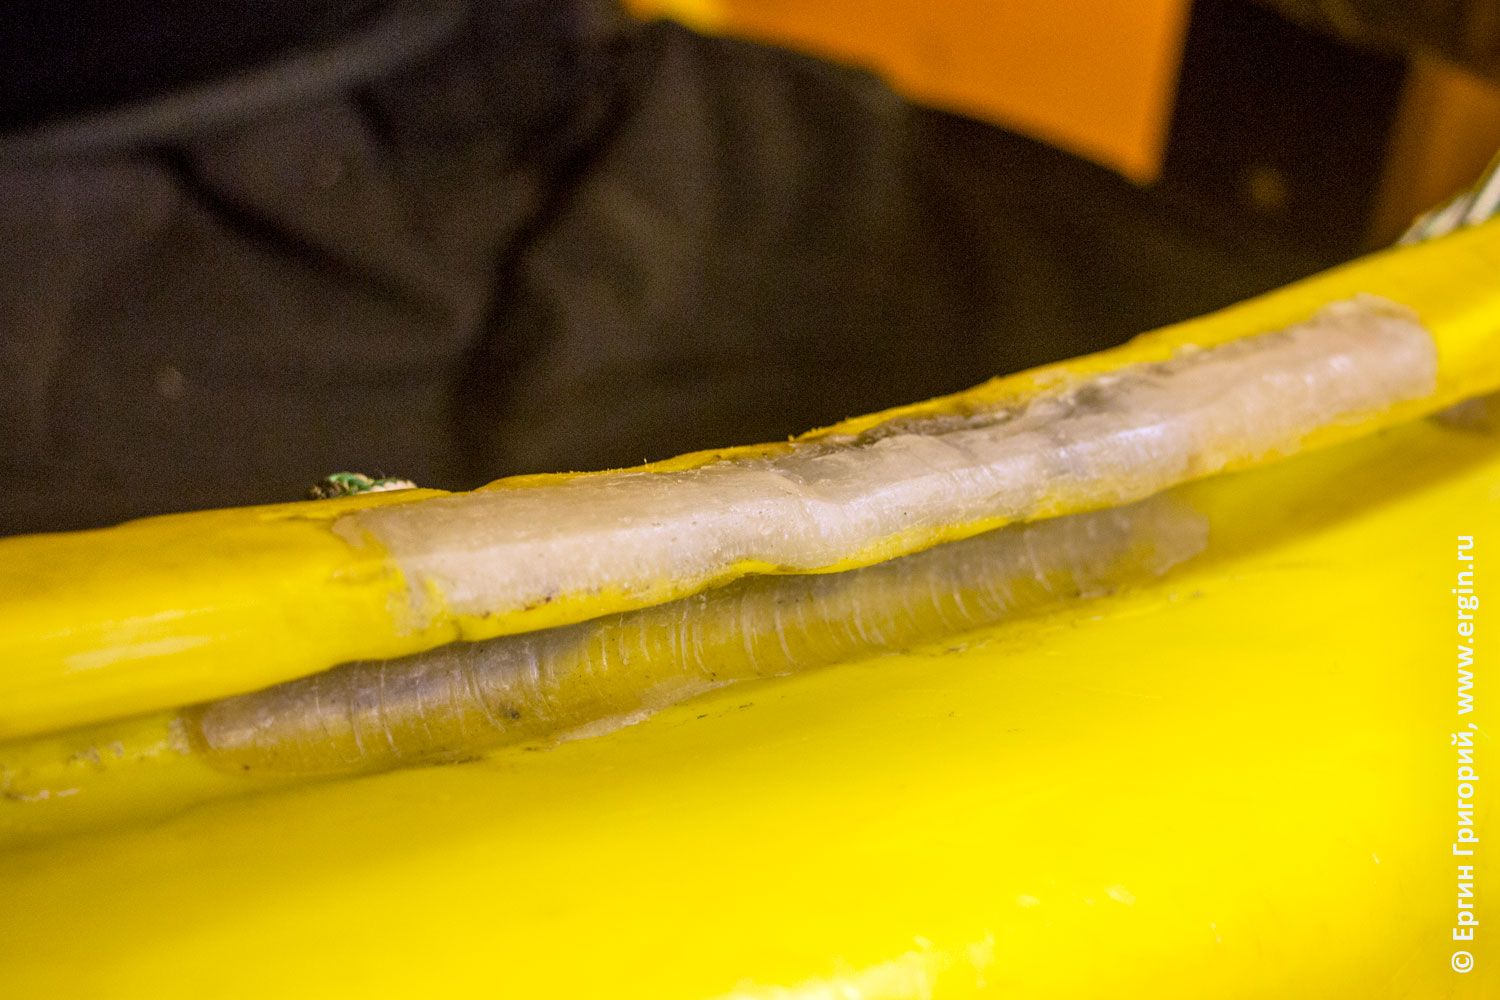 Заварка экструдером очка кокпита каяка Jackson kayak ремонт линейного полиэтилена